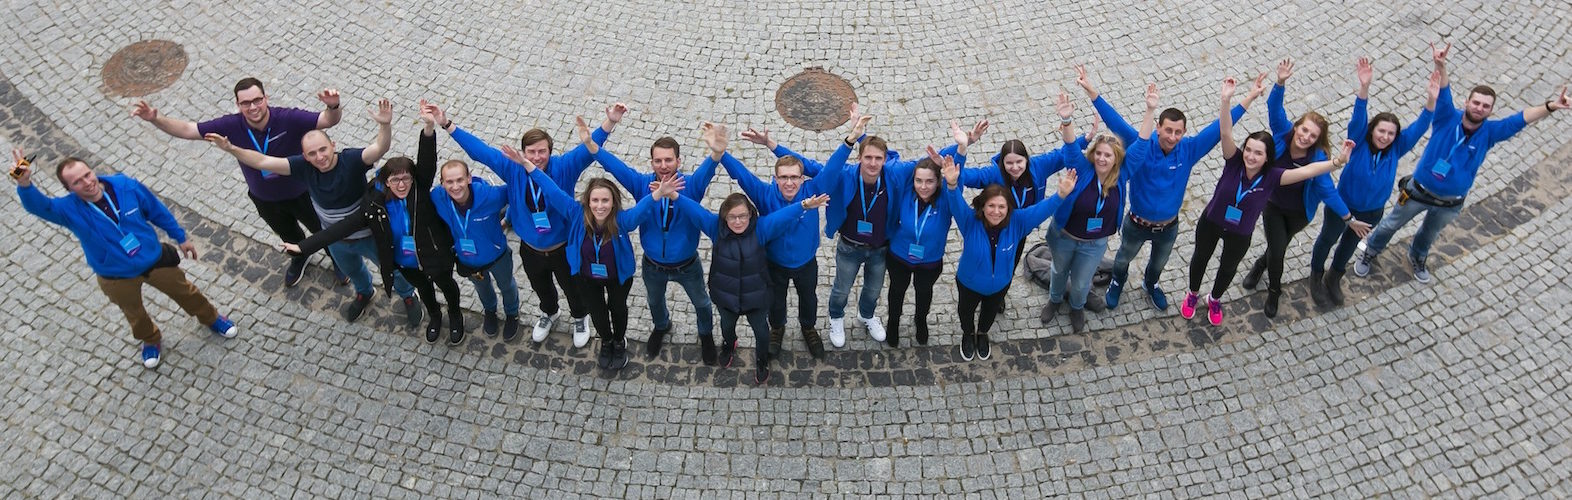 Grupa Absolvent.pl – studencki startup, który odniósł sukces